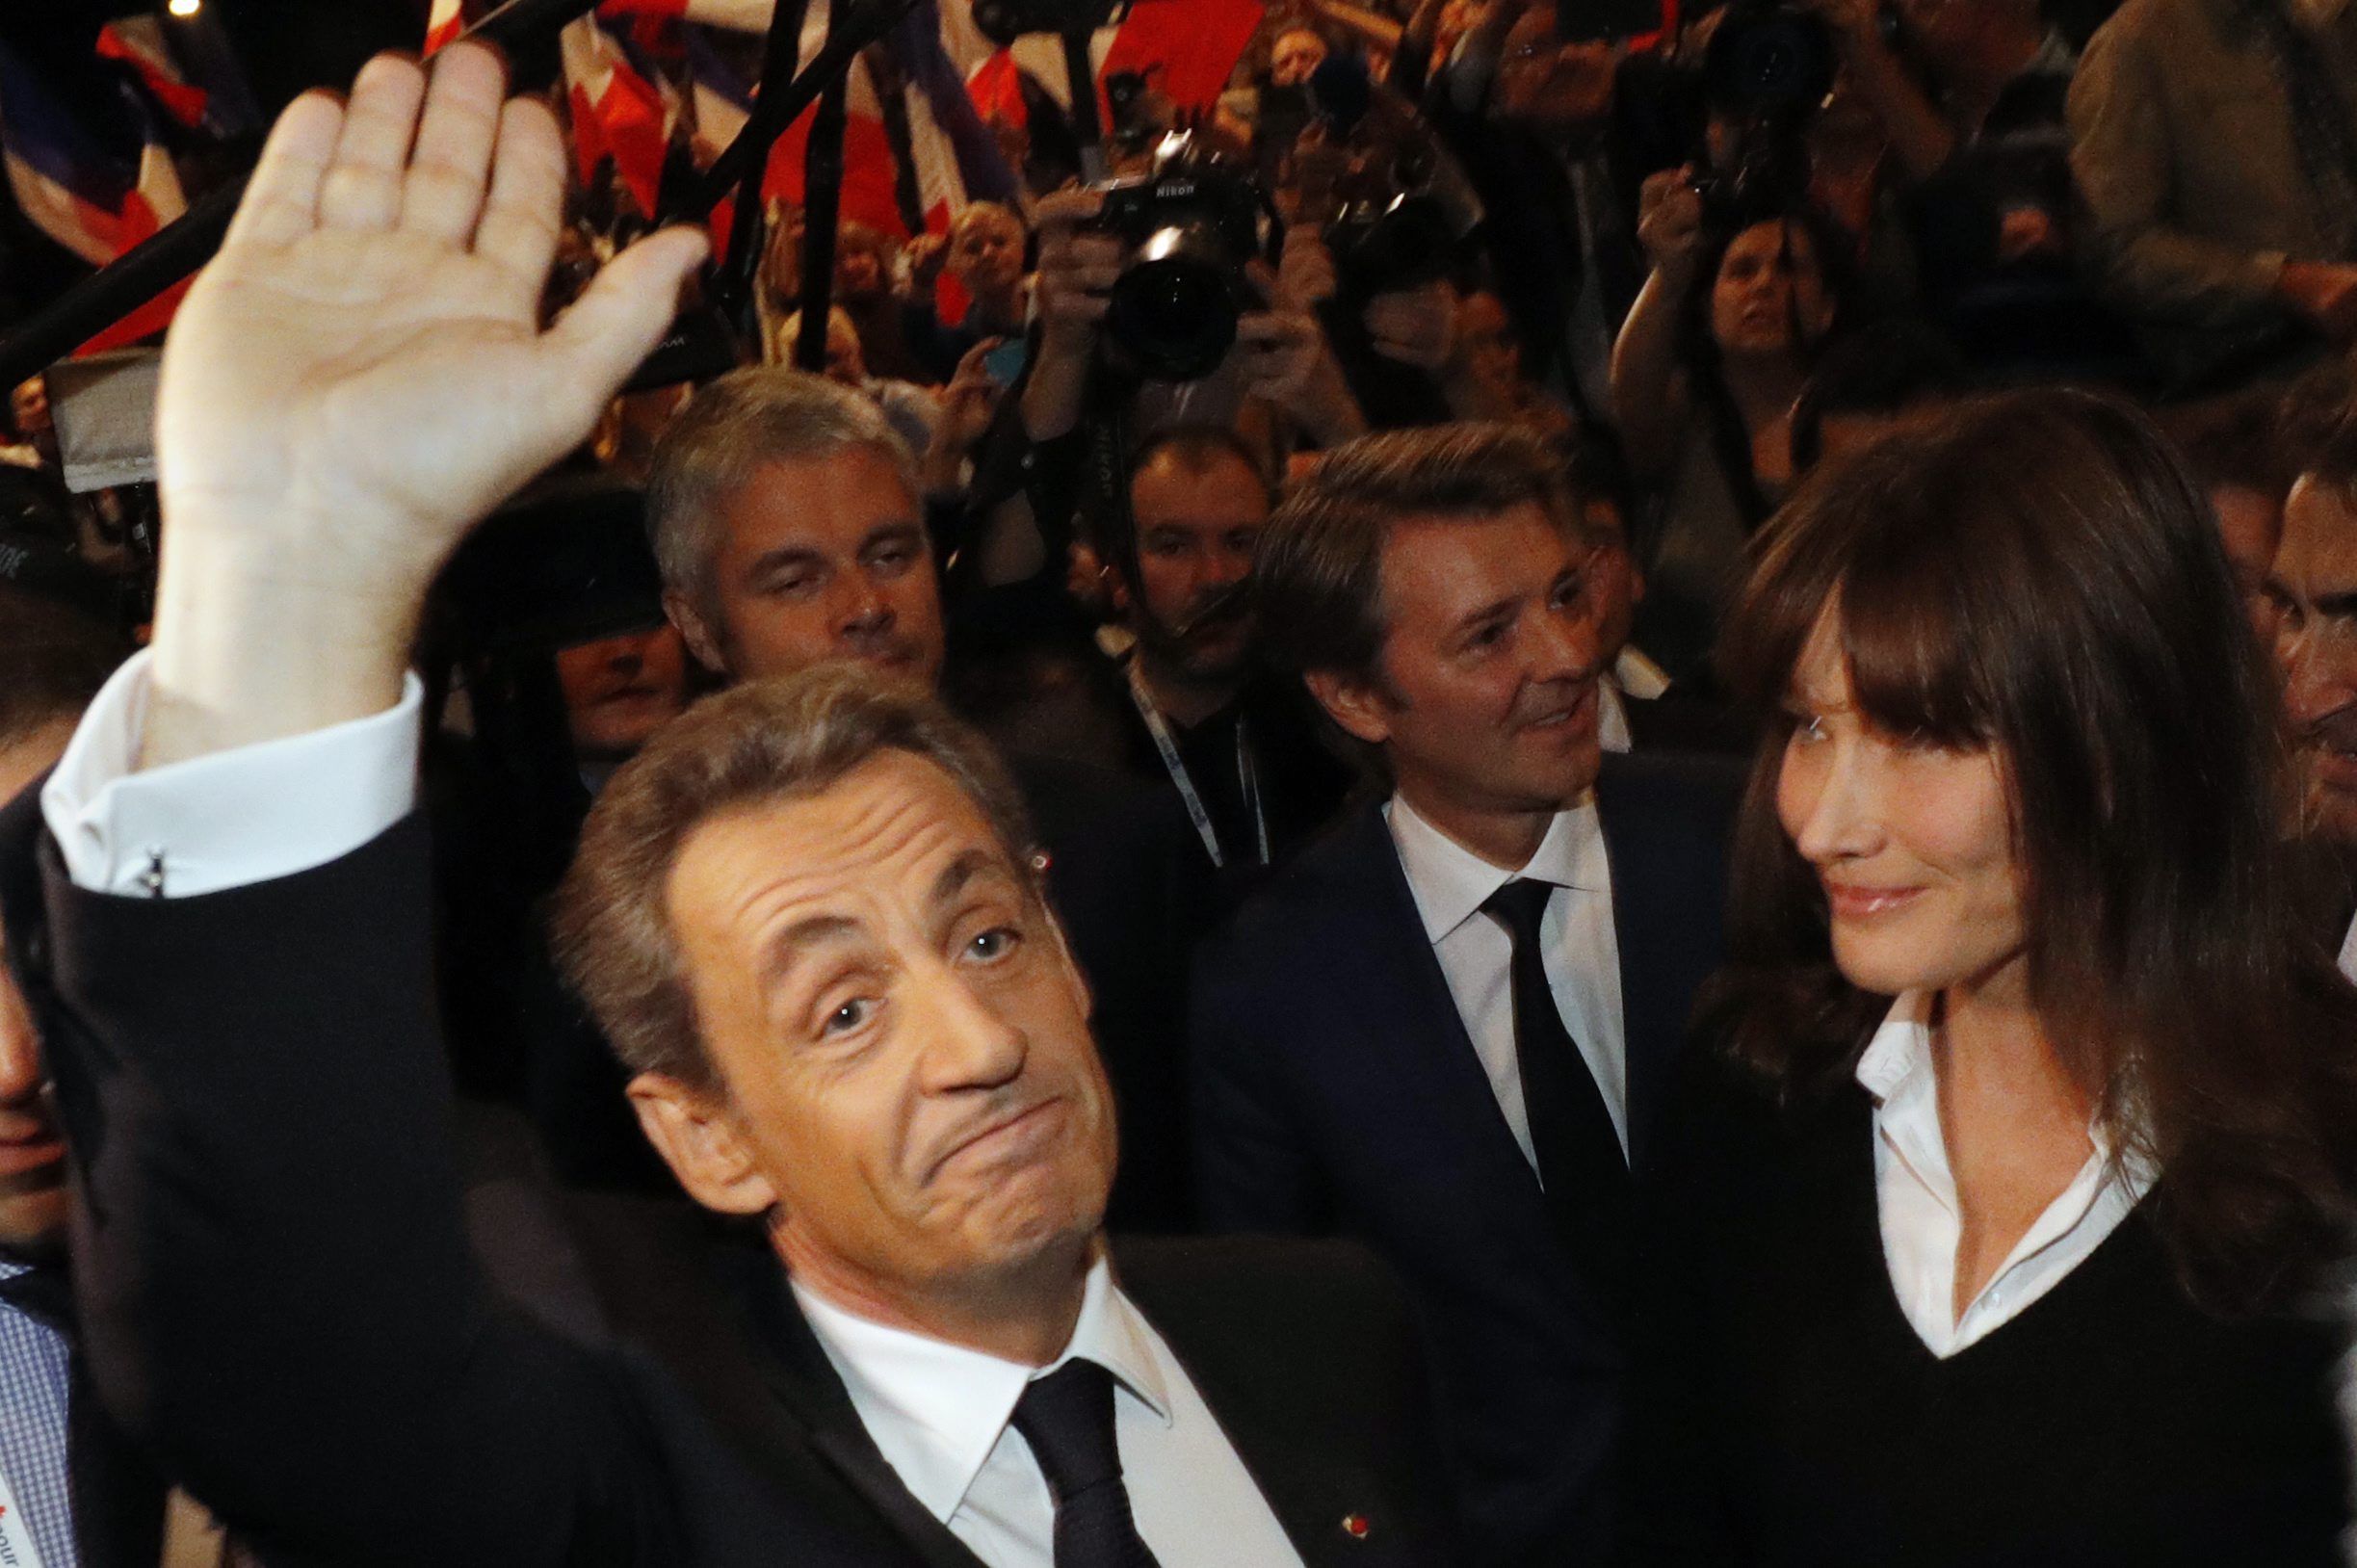 Sarkozy, aturat per la policia per cometre una infracció amb la bicicleta